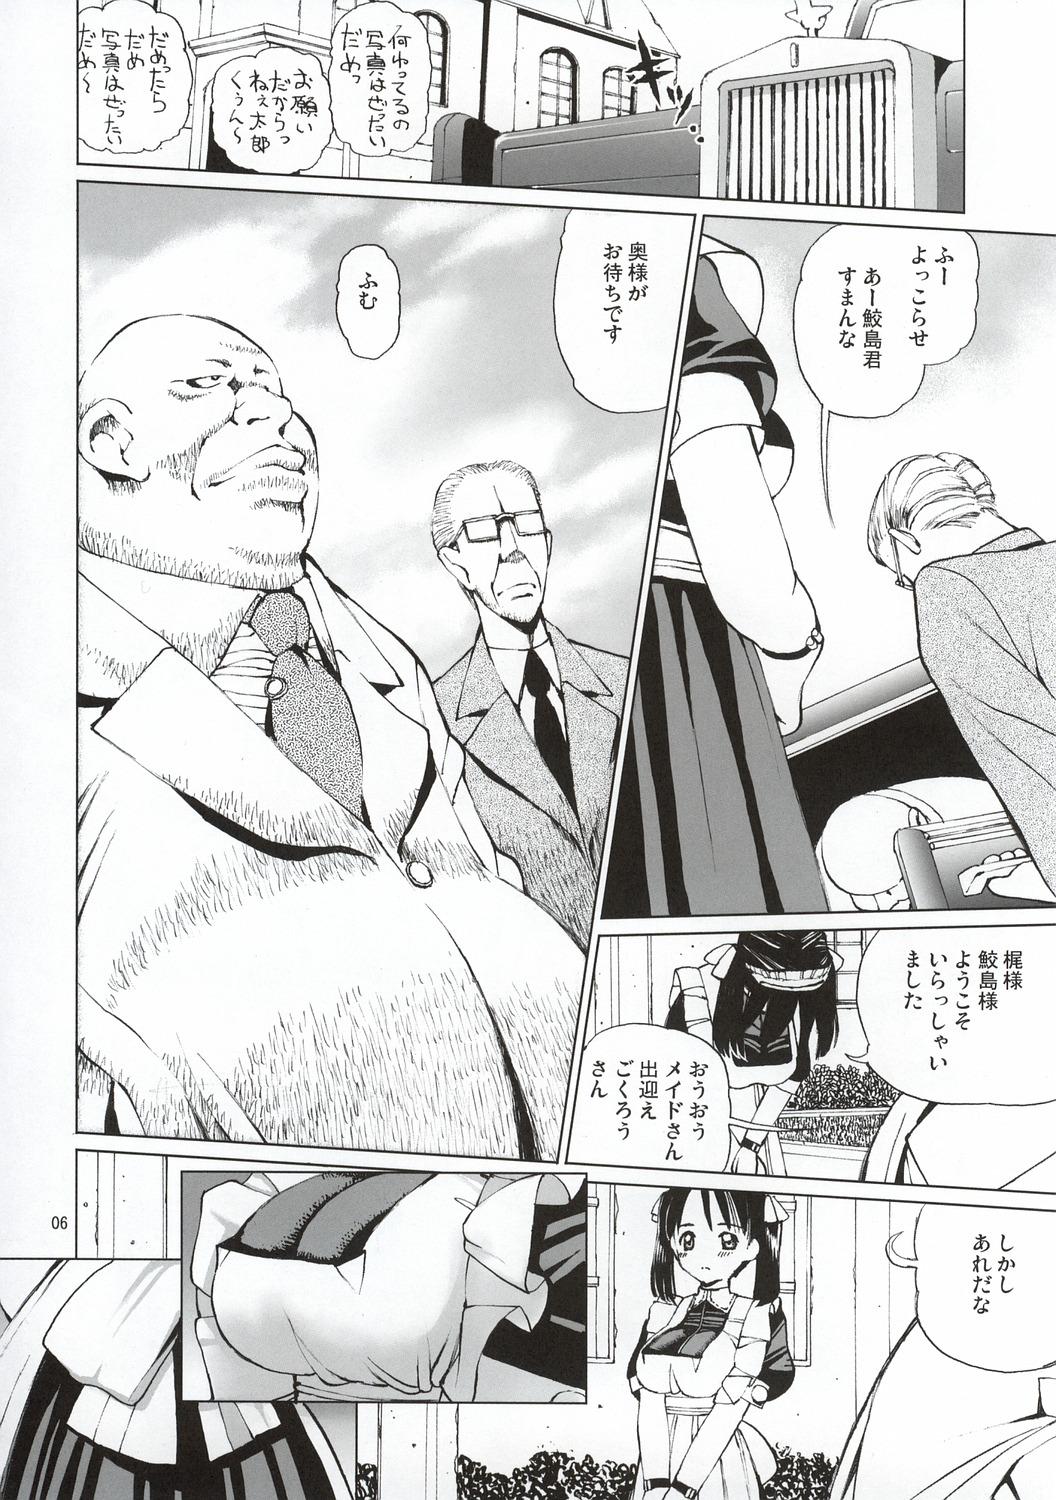 Gaybukkake (C64) [18 Monkeys (Inono)] Ecchi na Maid-san 2 -Ryoujokuhen- Sloppy Blowjob - Page 7